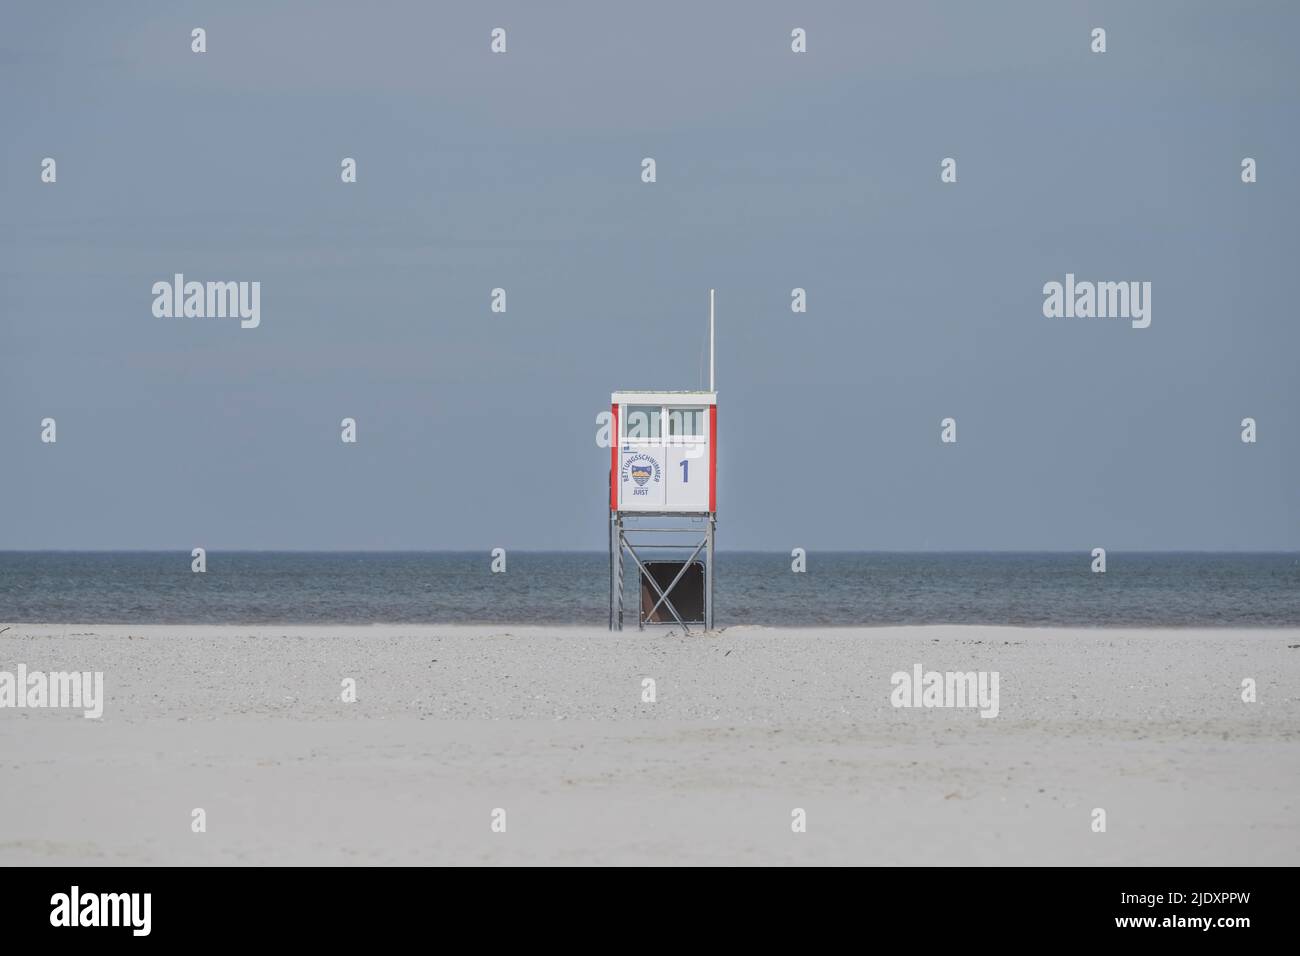 Allemagne, Basse-Saxe, Juist, refuge Lifeguard sur une plage vide avec ligne d'horizon claire au-dessus de la mer du Nord en arrière-plan Banque D'Images